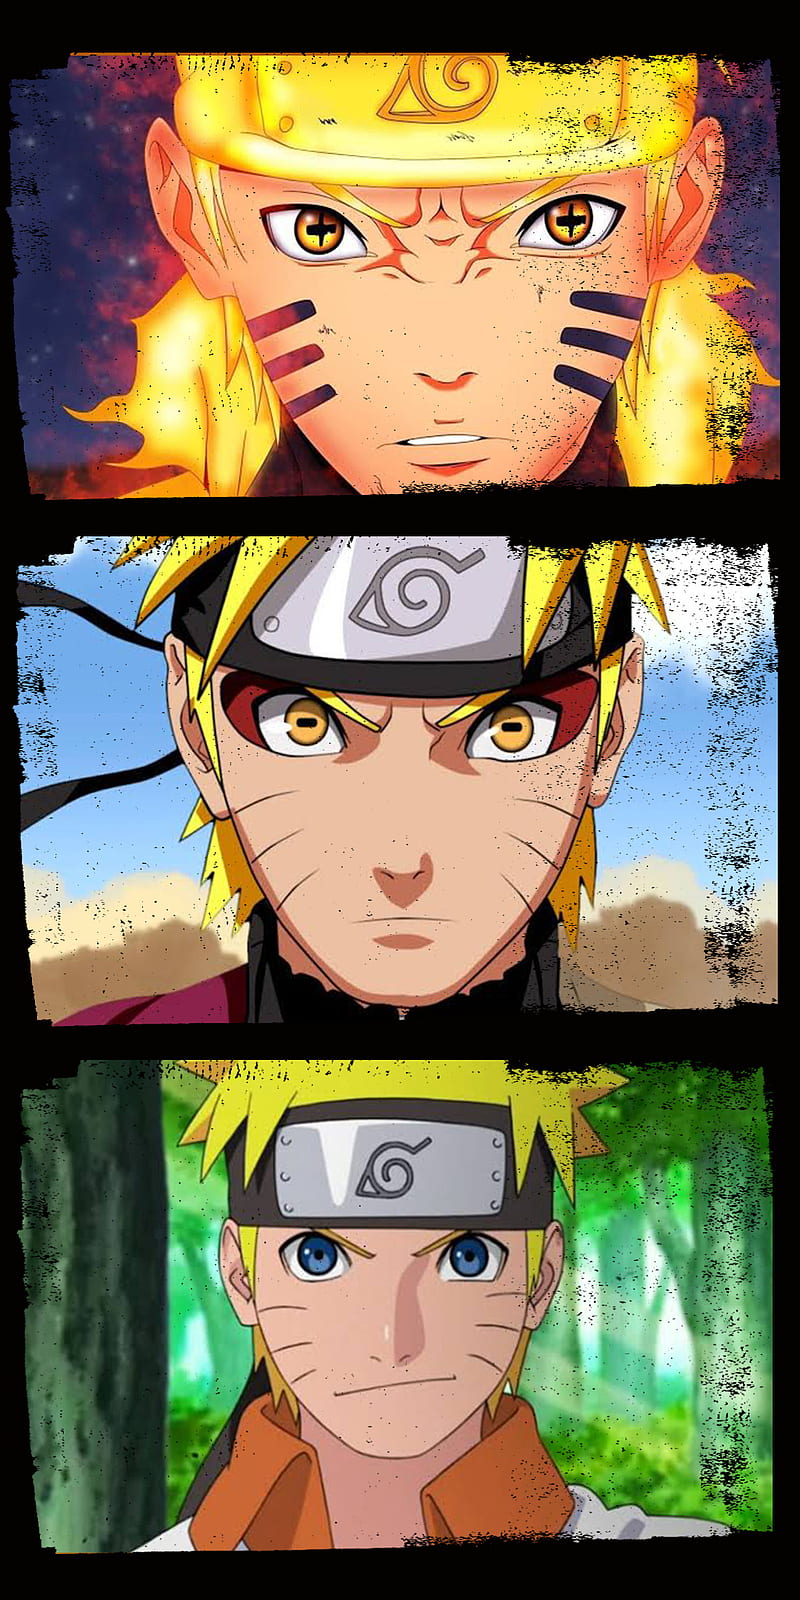 Naruto 7th Hokage Sage Mode  Naruto uzumaki hokage, Naruto